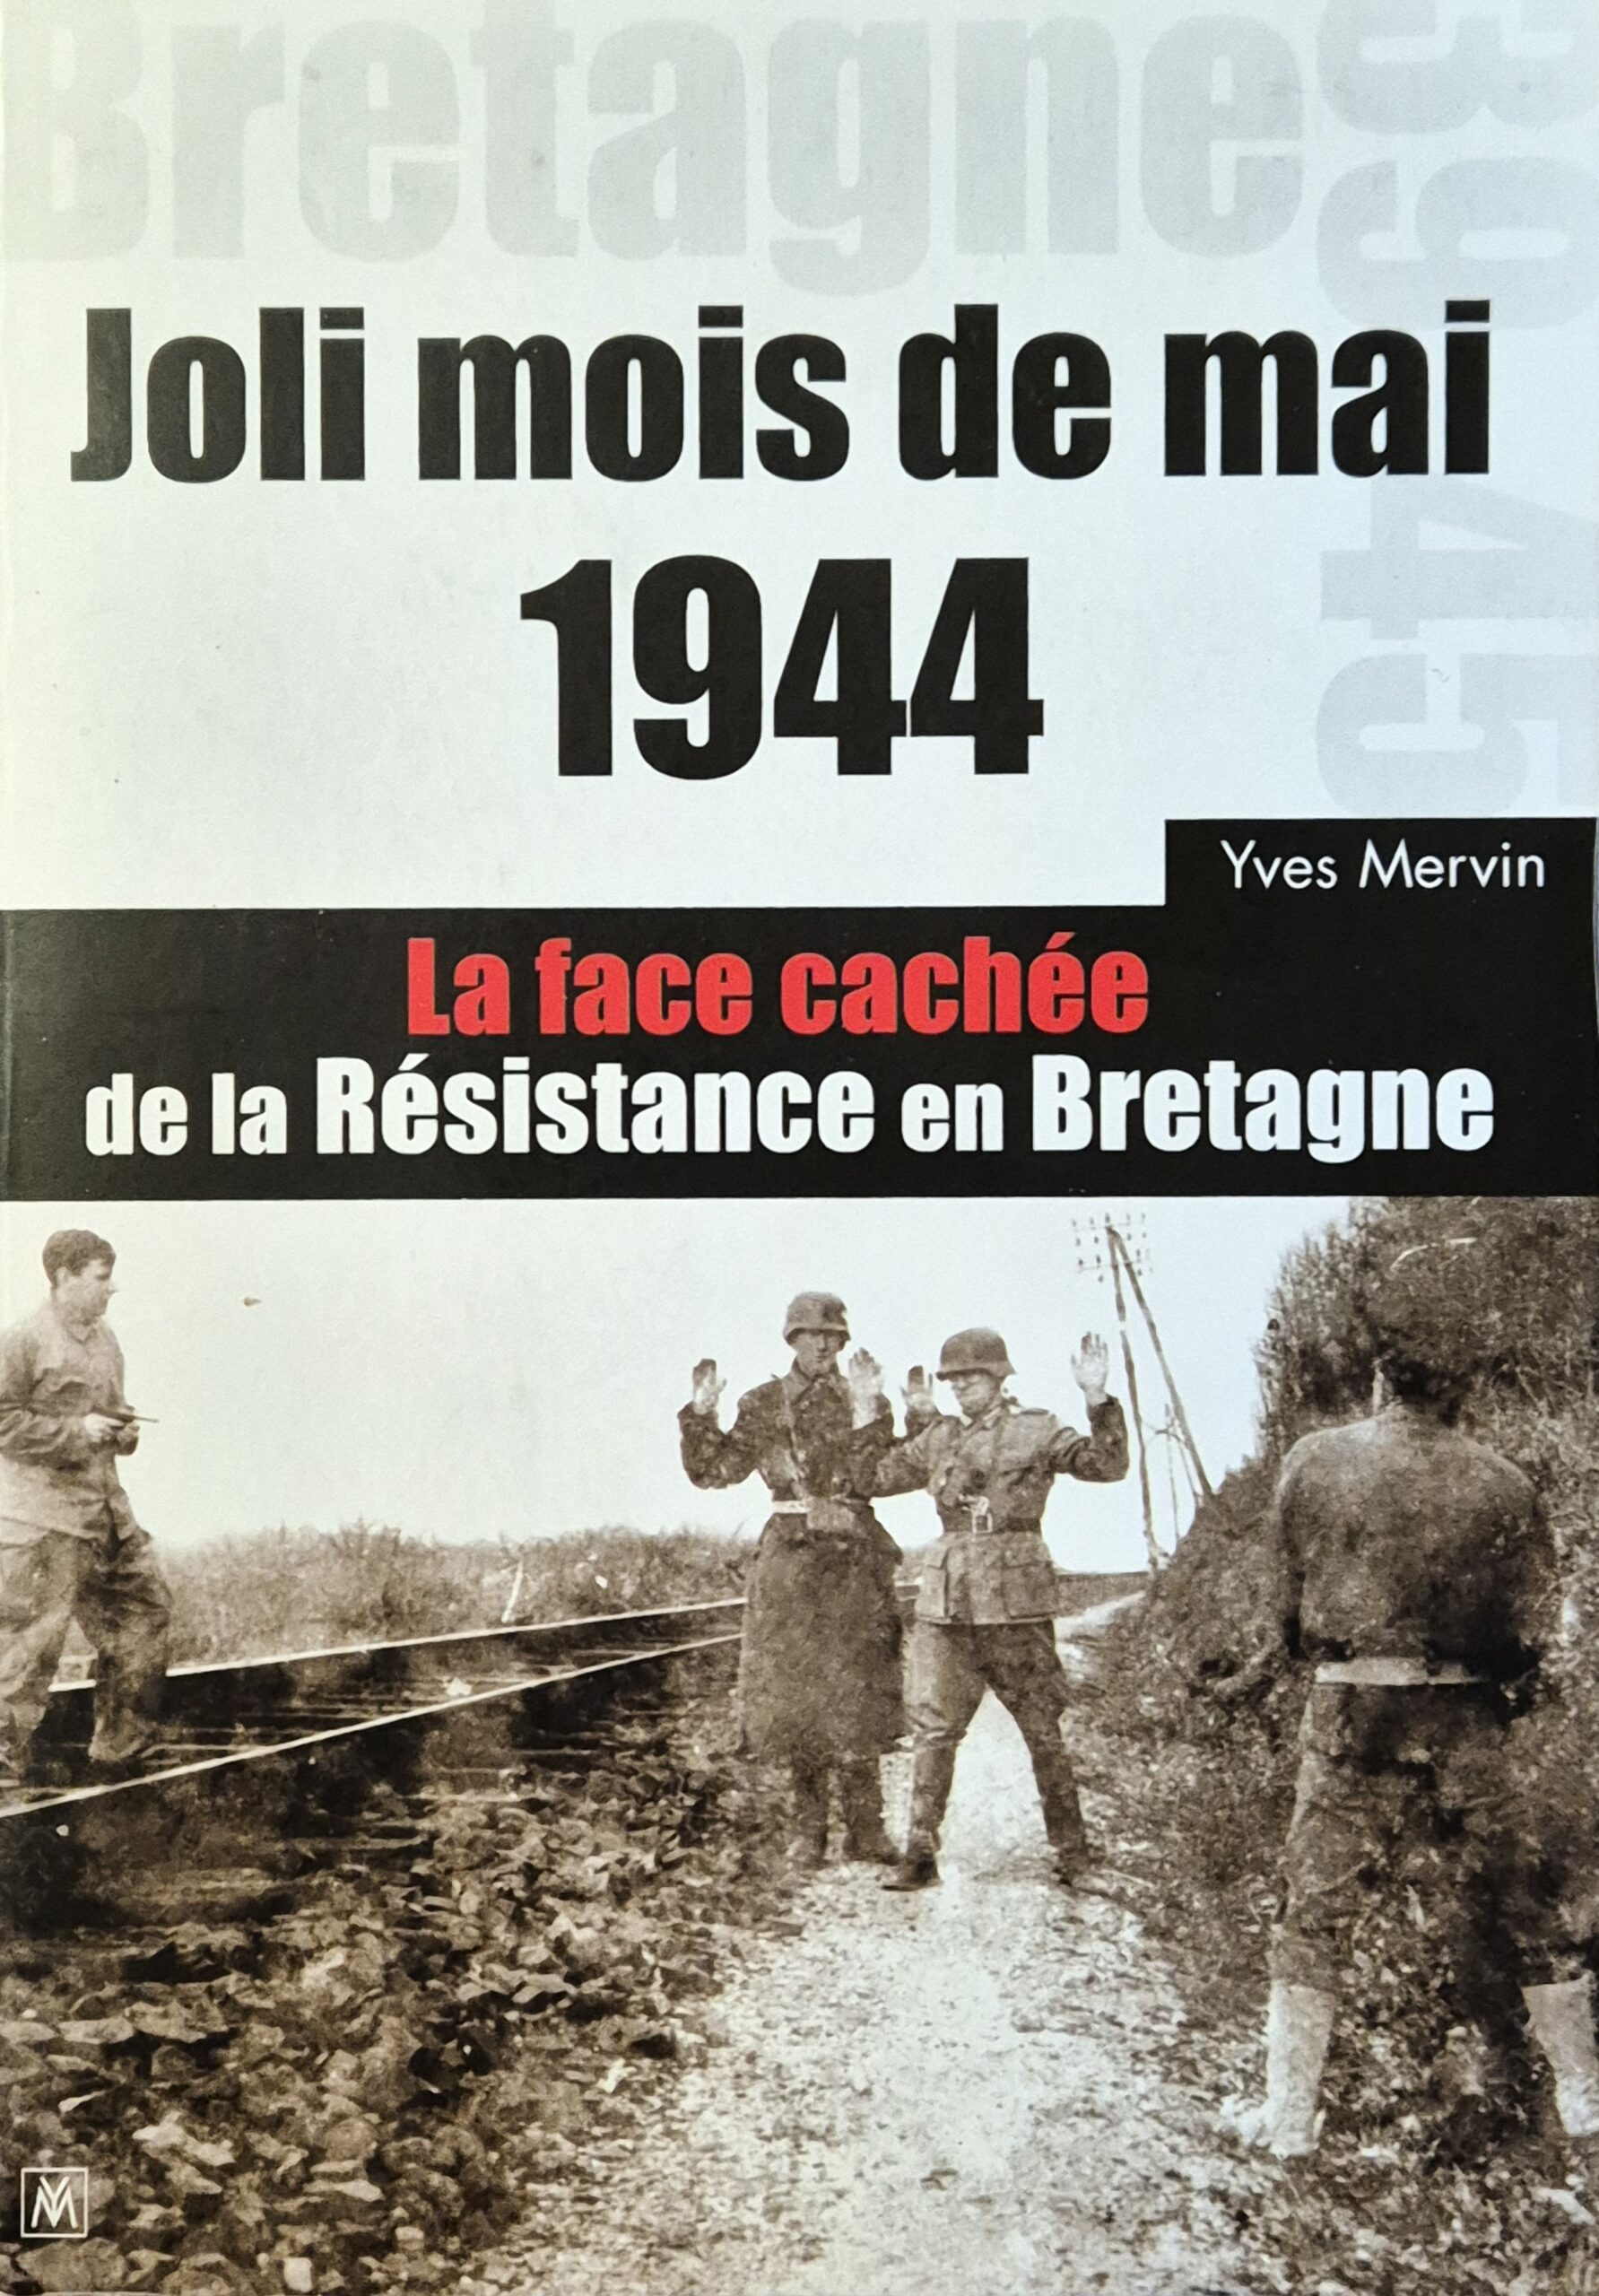 MERVIN Yves, ‘Joli mois de mai 1944 – La face cachée de la Résistance en Bretagne’.